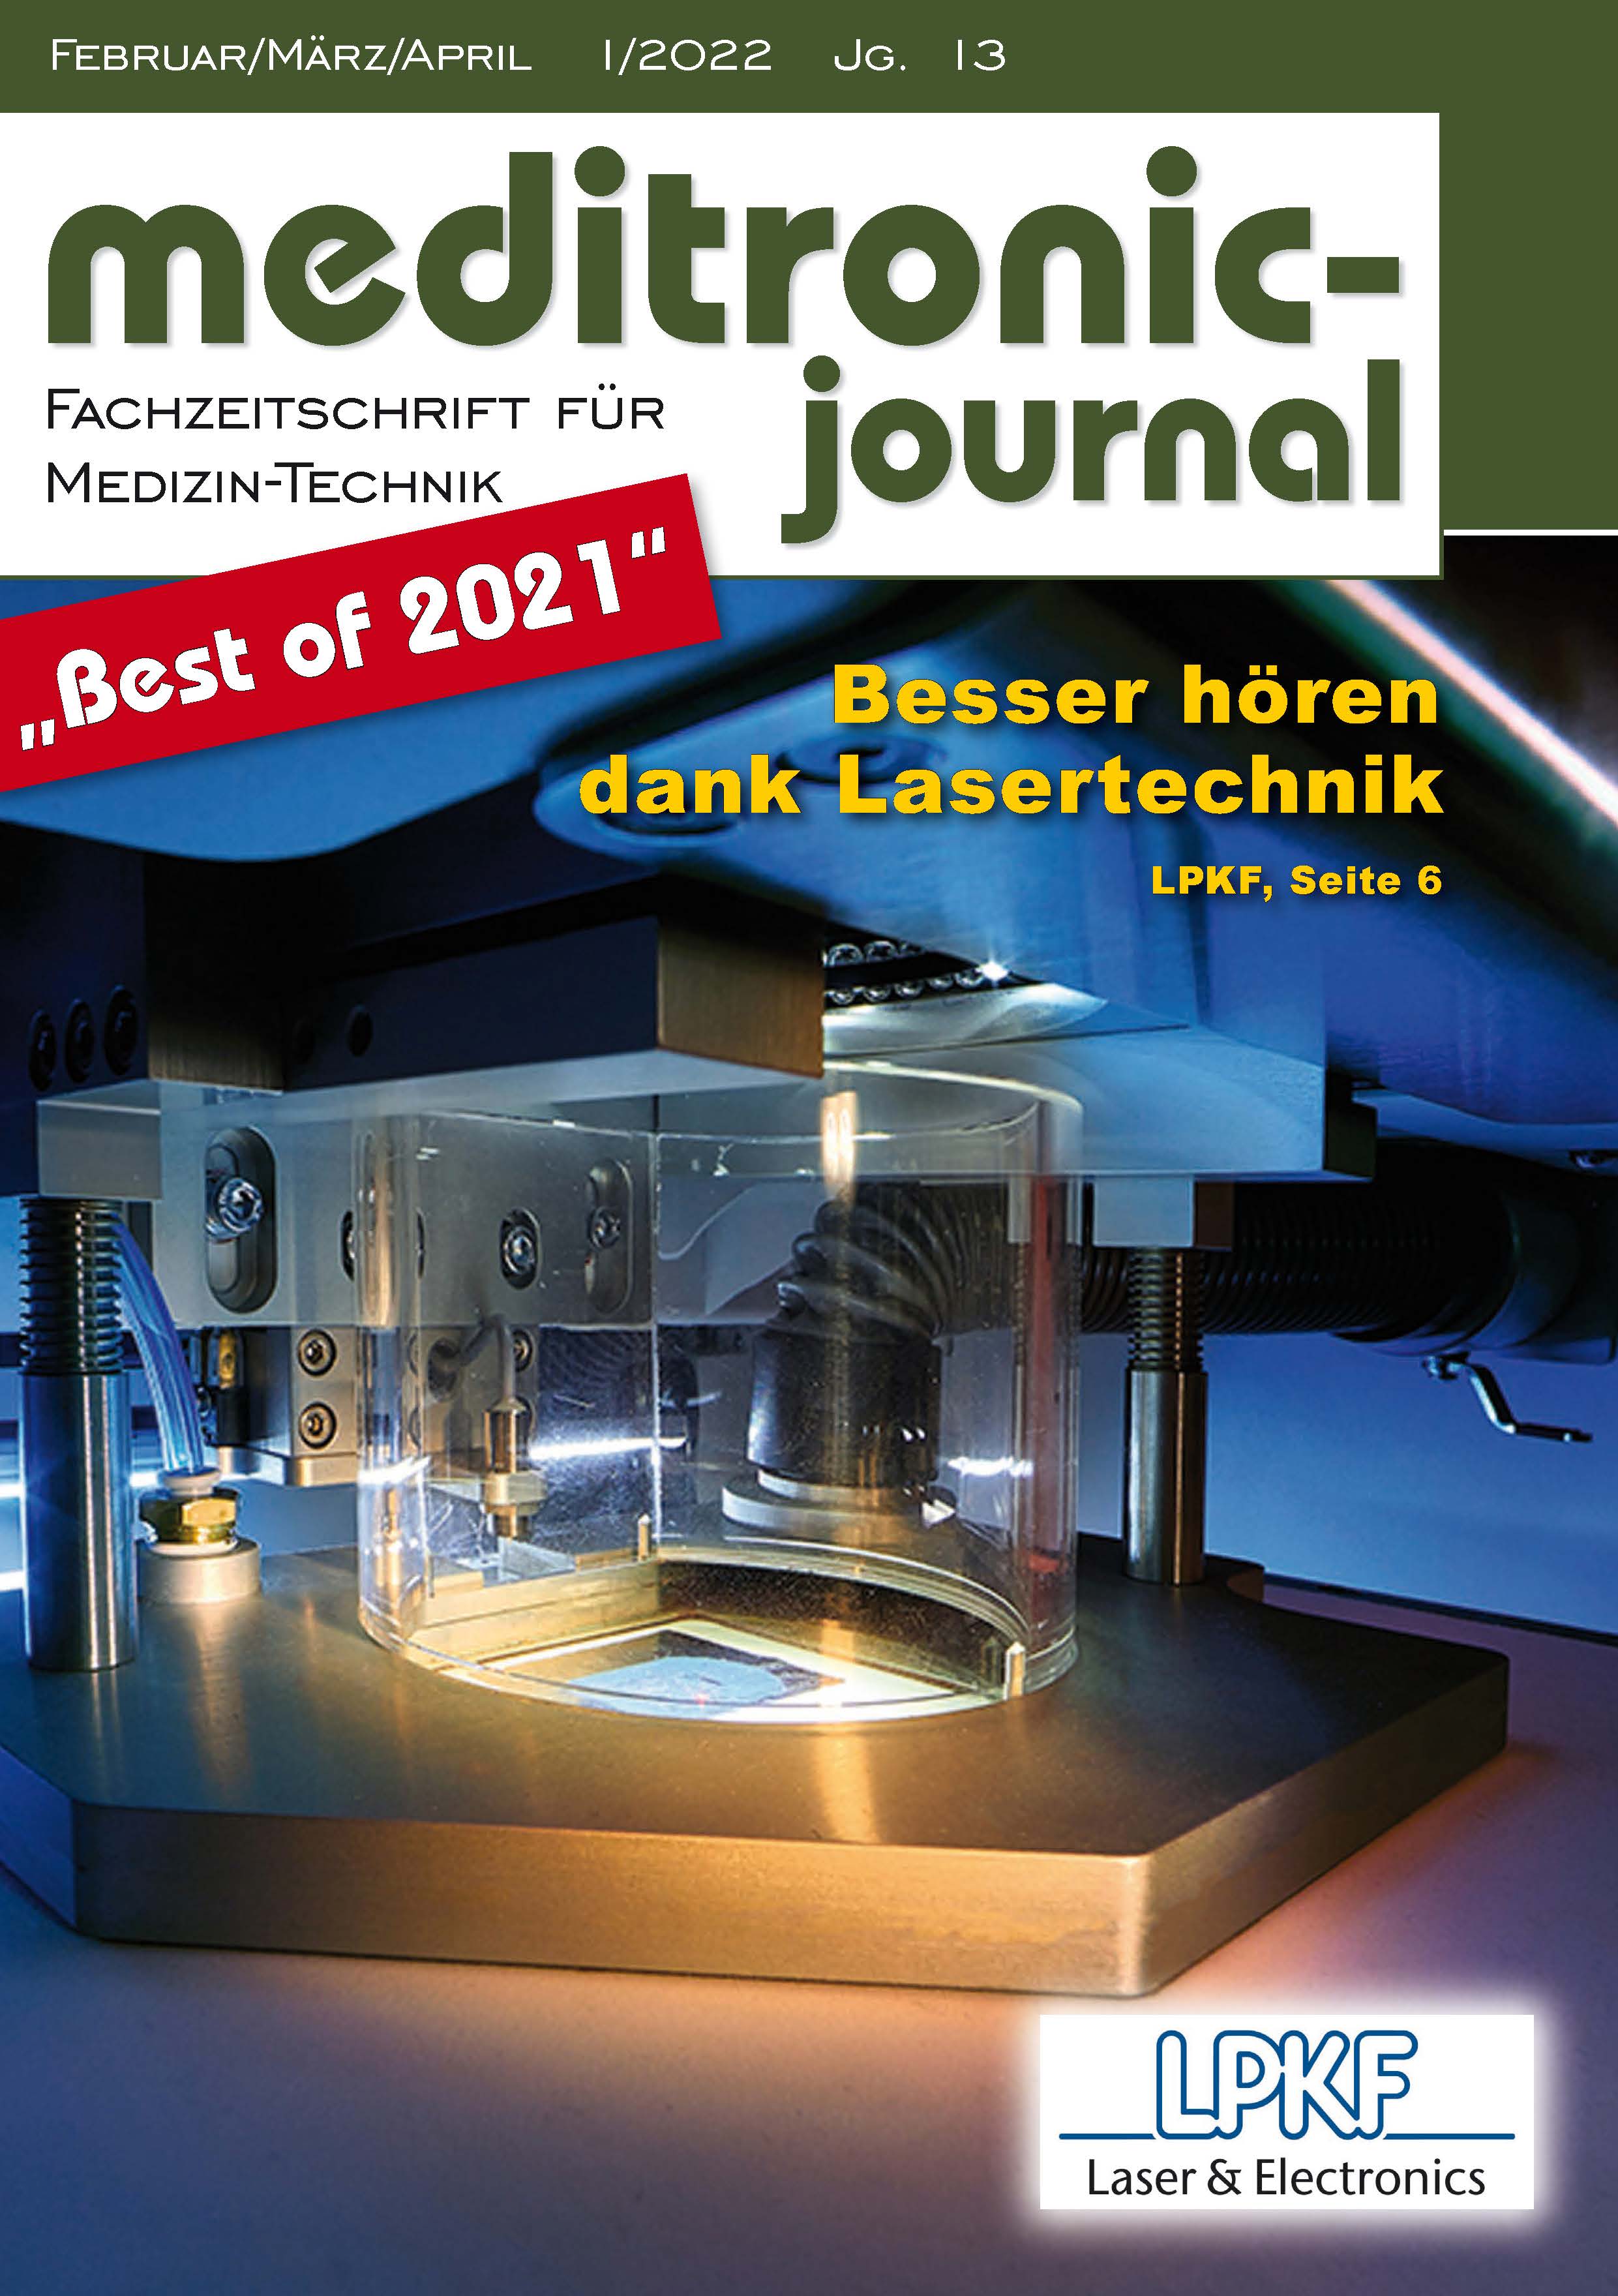 CMC PS Torisch und Best of 2021 Torx_Seite 1